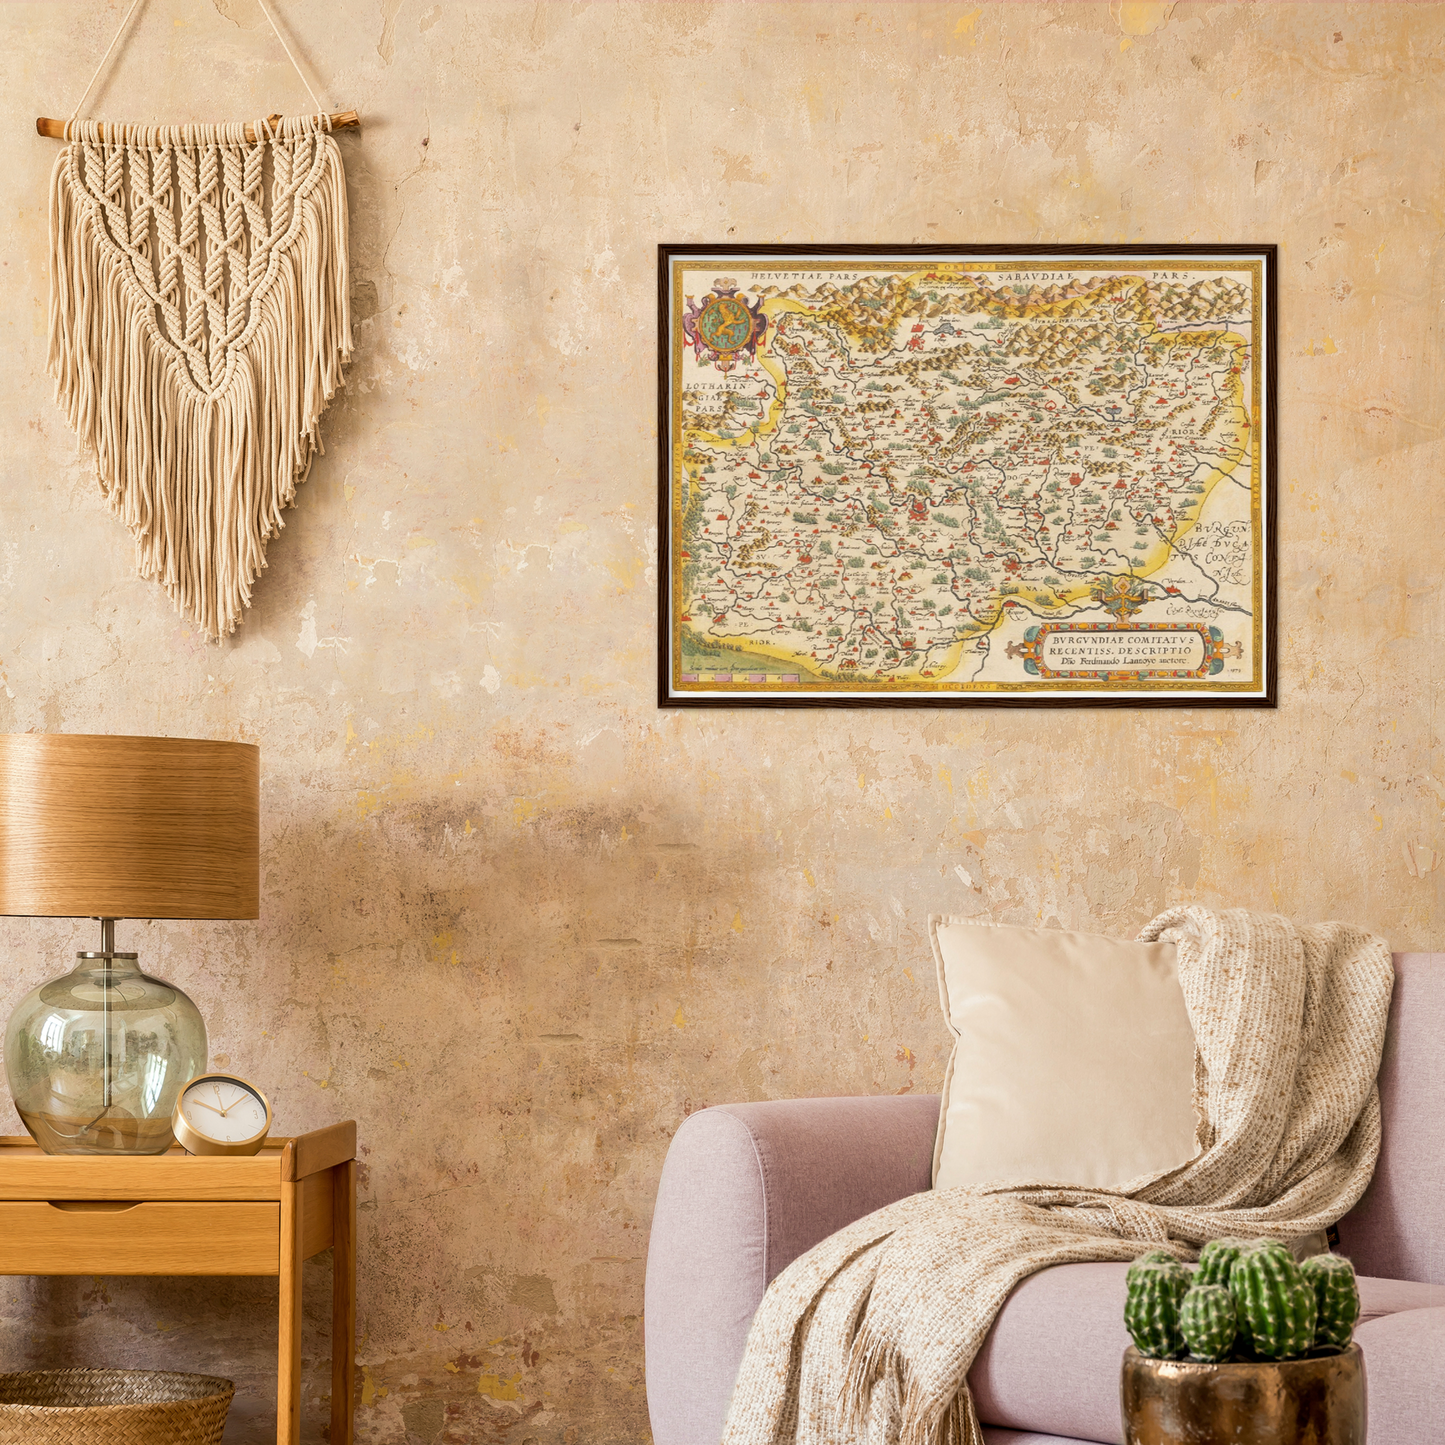 Historische Landkarte Burgund um 1609